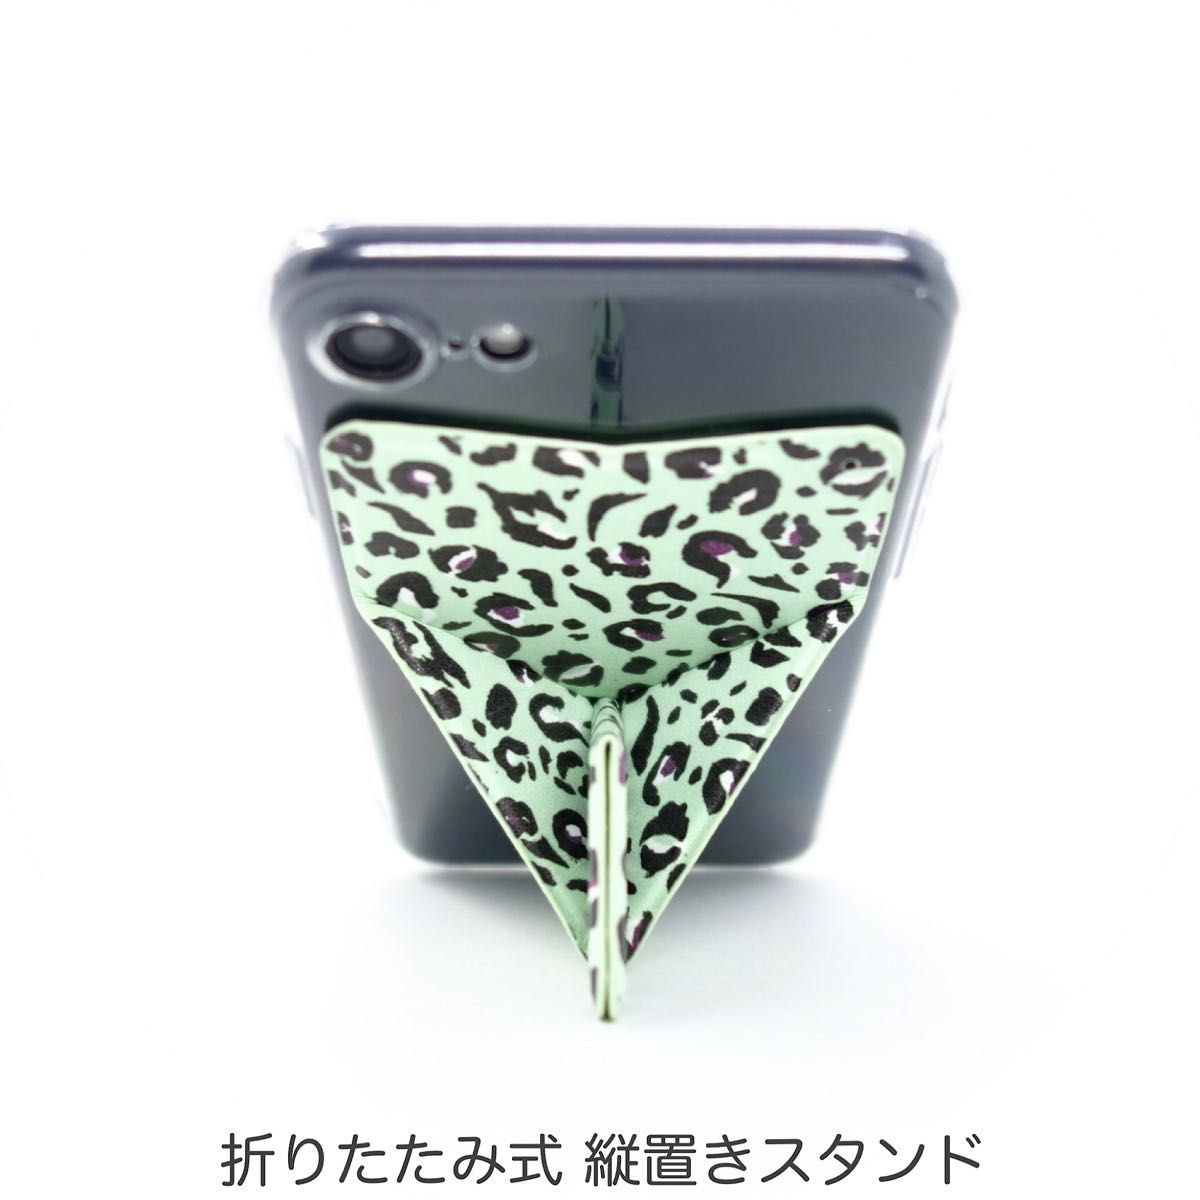 iPhone ケース SE3 SE2 8 7 スマホスタンド スマホグリップ マグネット内蔵 ワイヤレス充電OK グリーンの豹柄